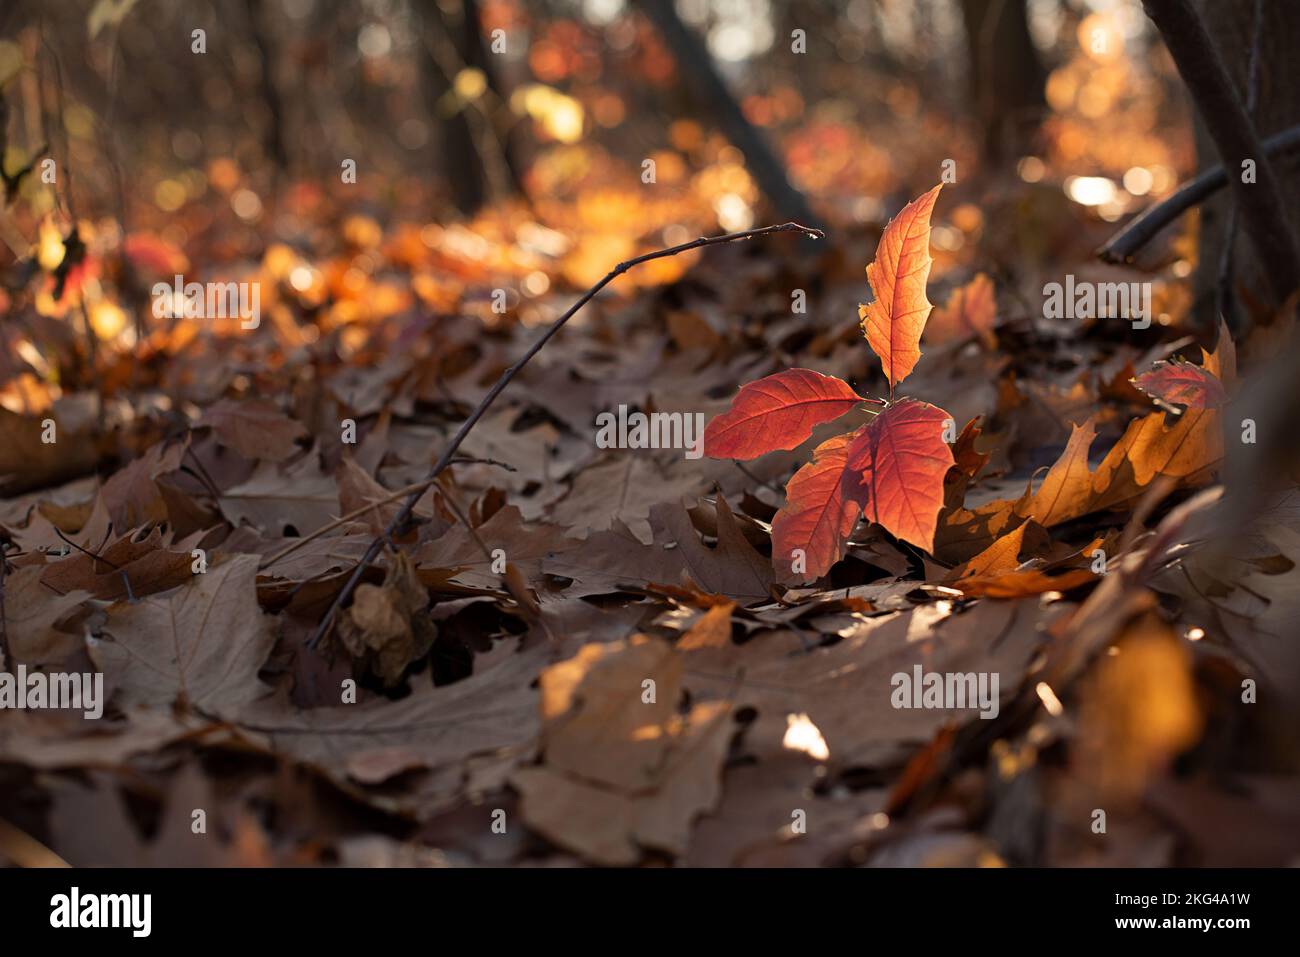 Fotografia in primo piano di foglie autunnali dorate alla luce del sole. Foto Stock